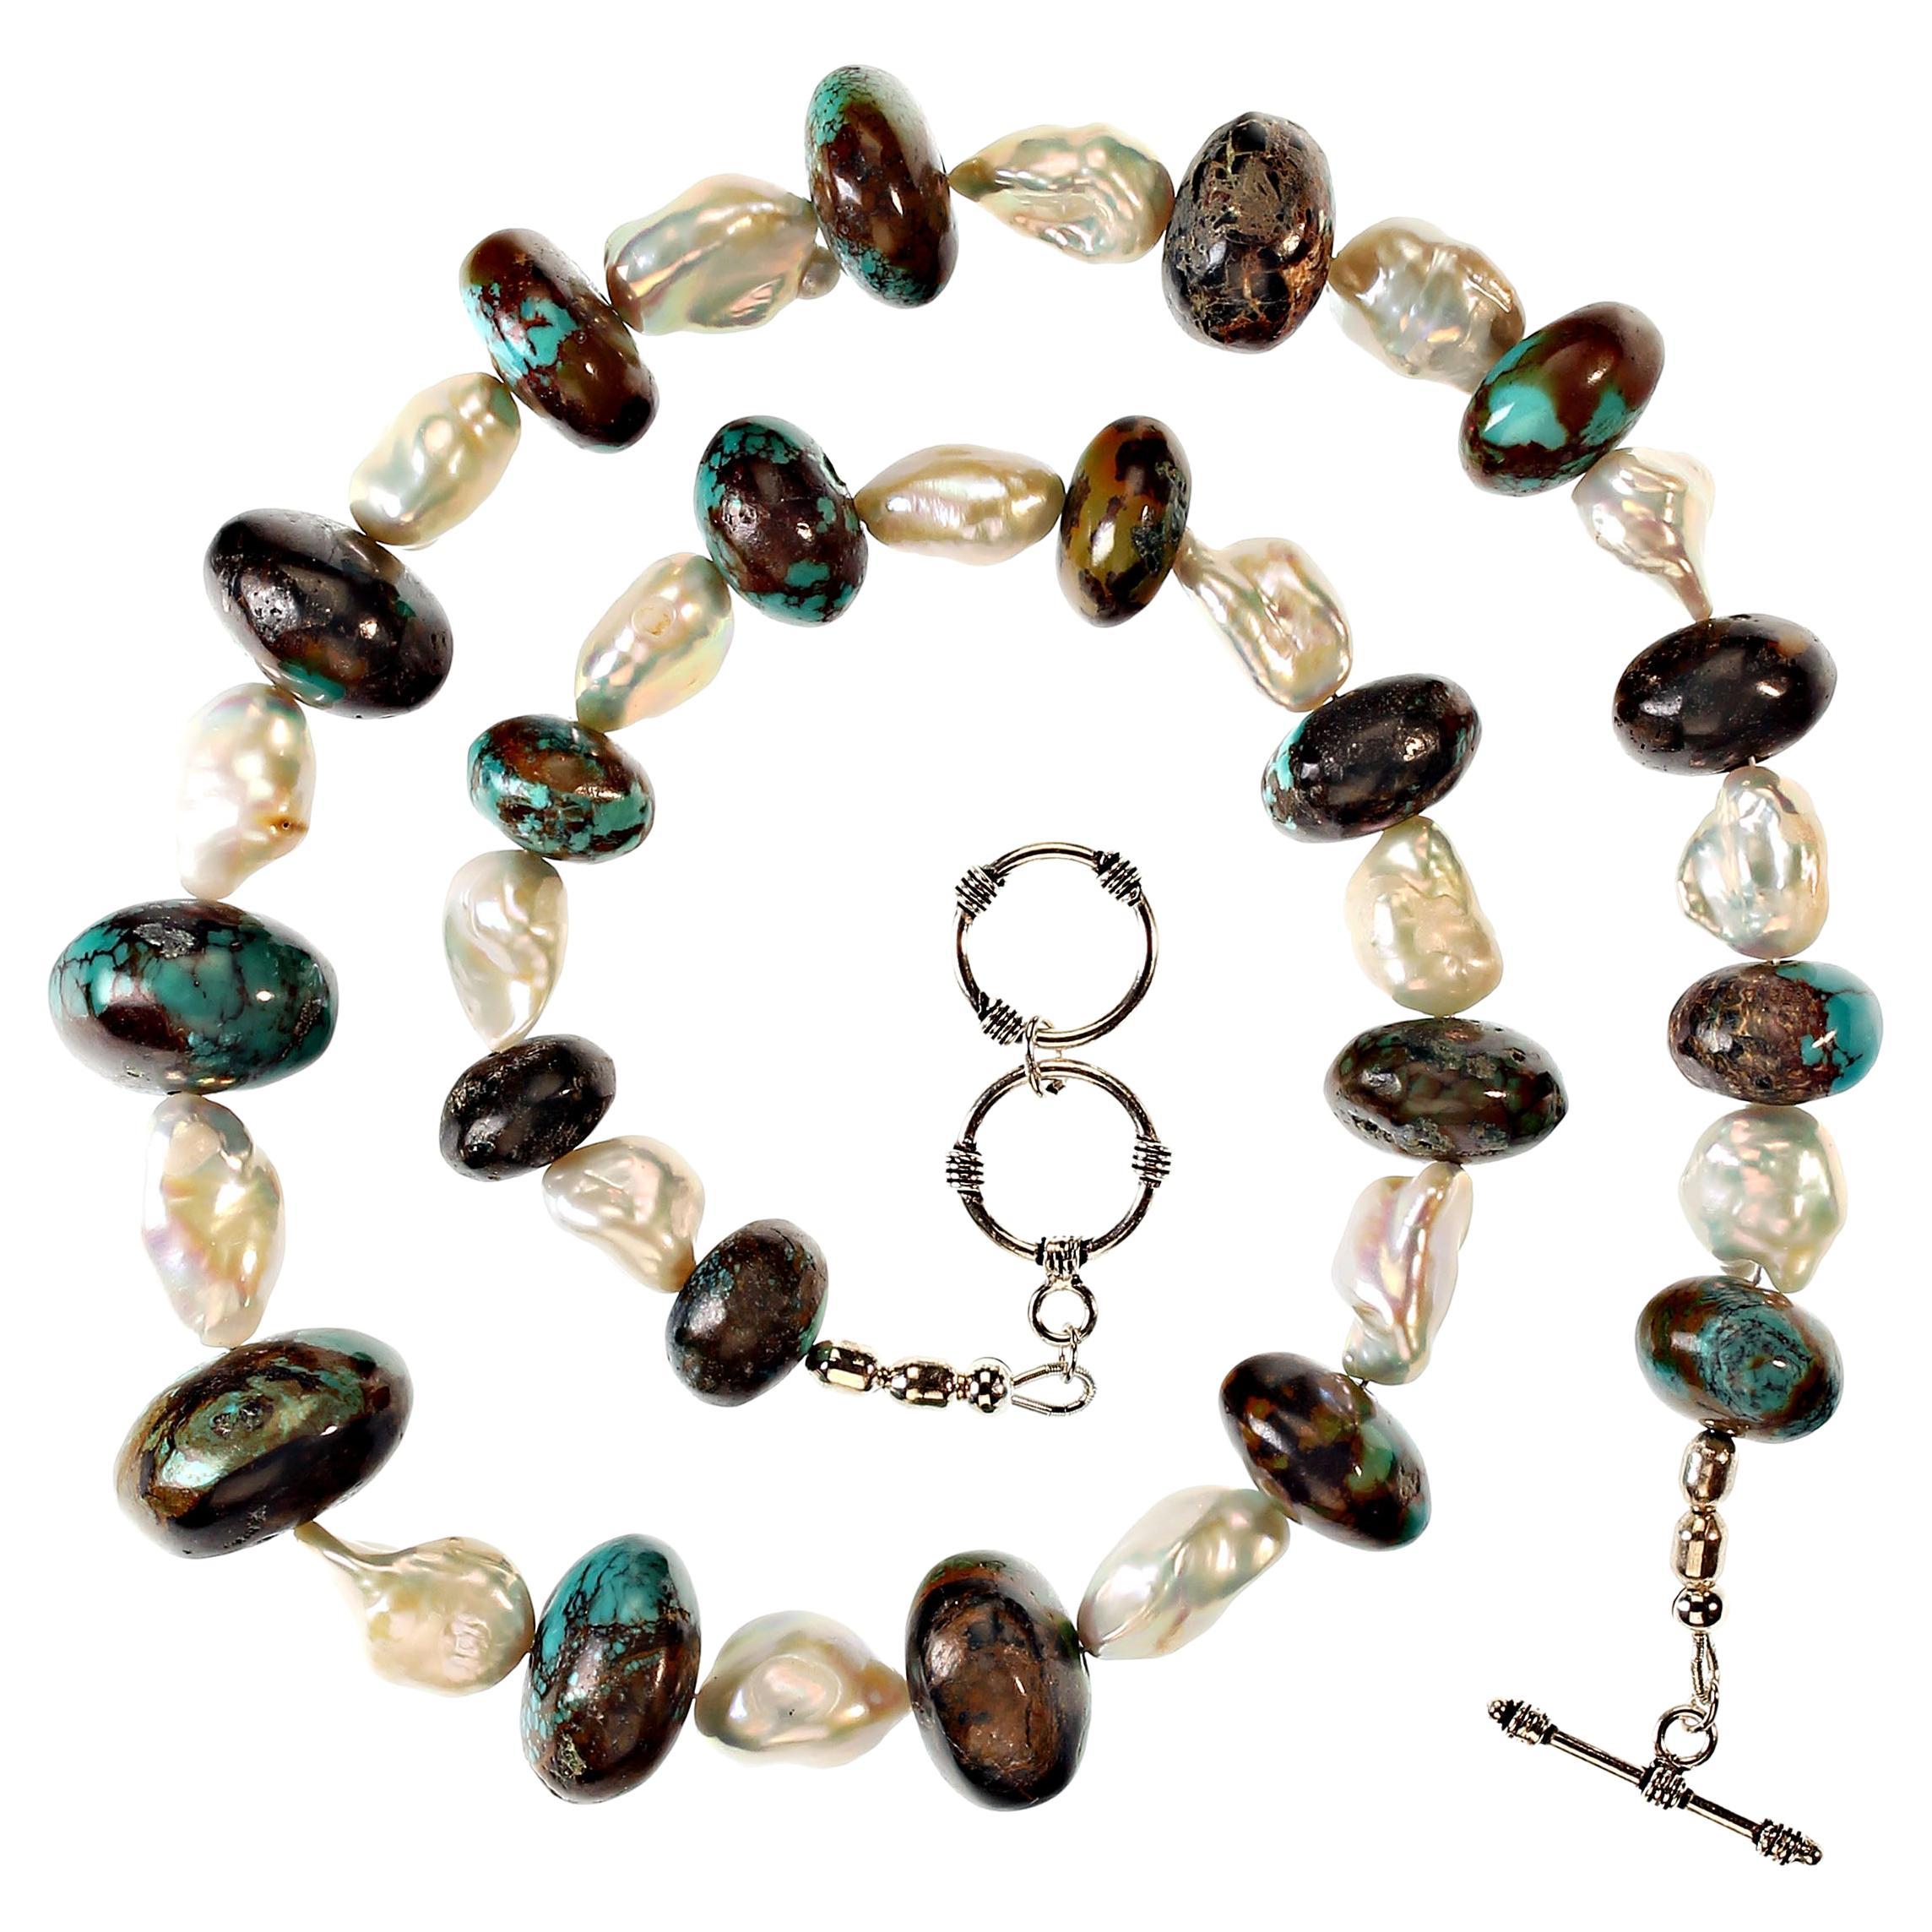 Collier de 22 pouces de rondelles arrondies graduées de turquoise Up&Up (jusqu'à 23mm) mélangées à des perles d'eau douce blanches. Les perles ont un lustre magnifique avec des éclats de rose et de bleu. Le collier est fixé à l'aide d'un fermoir à